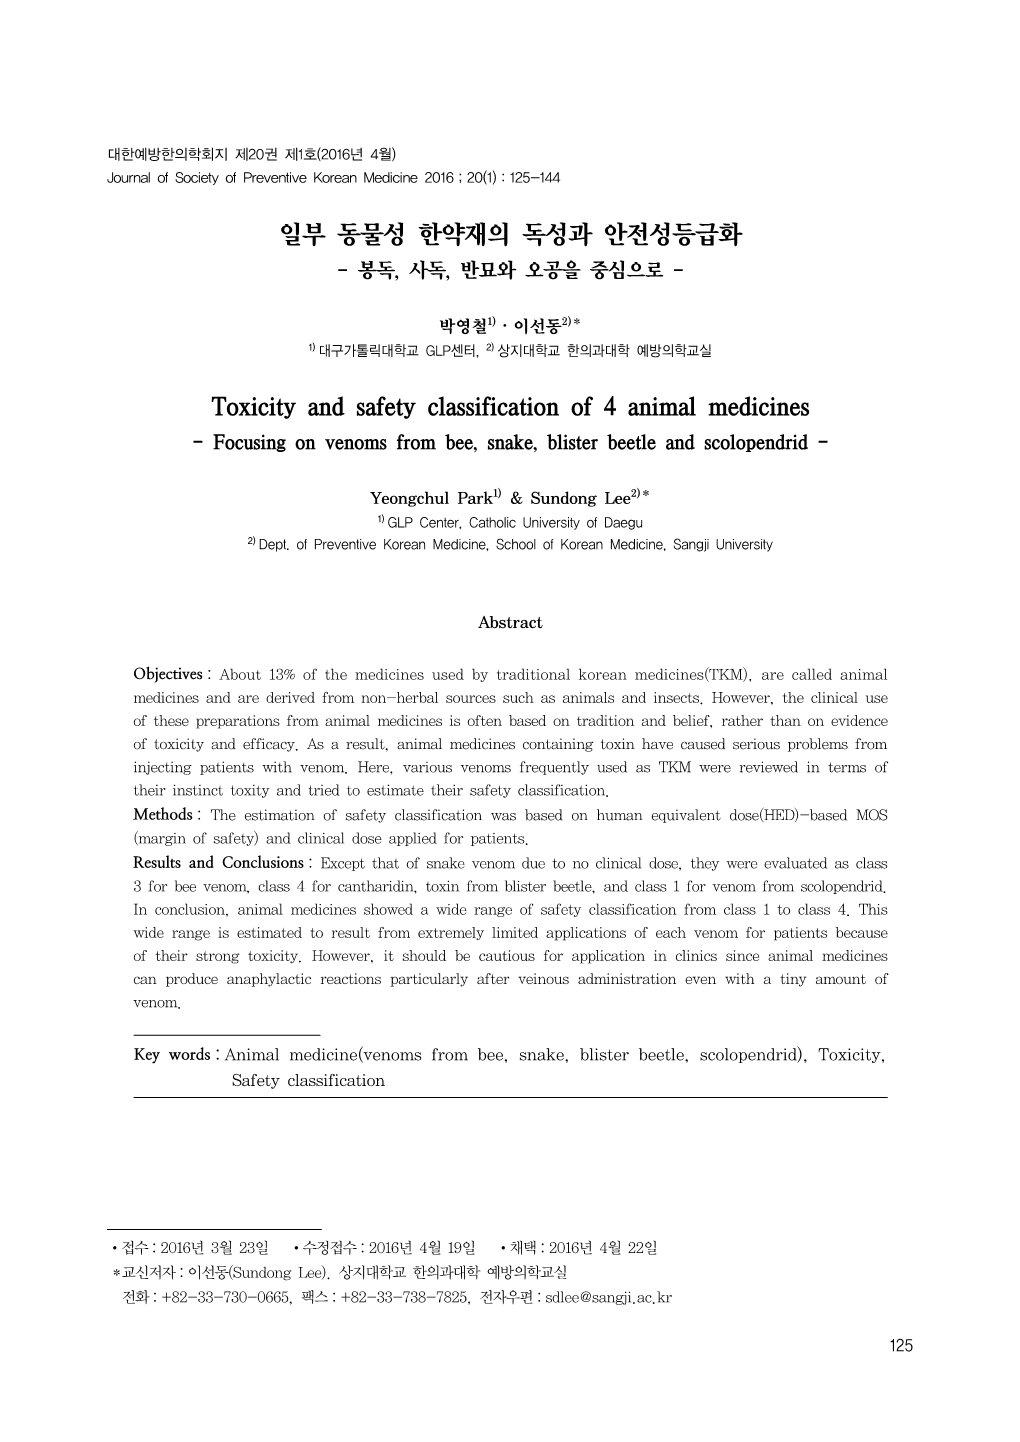 일부 동물성 한약재의 독성과 안전성등급화 Toxicity and Safety Classification of 4 Animal Medicines